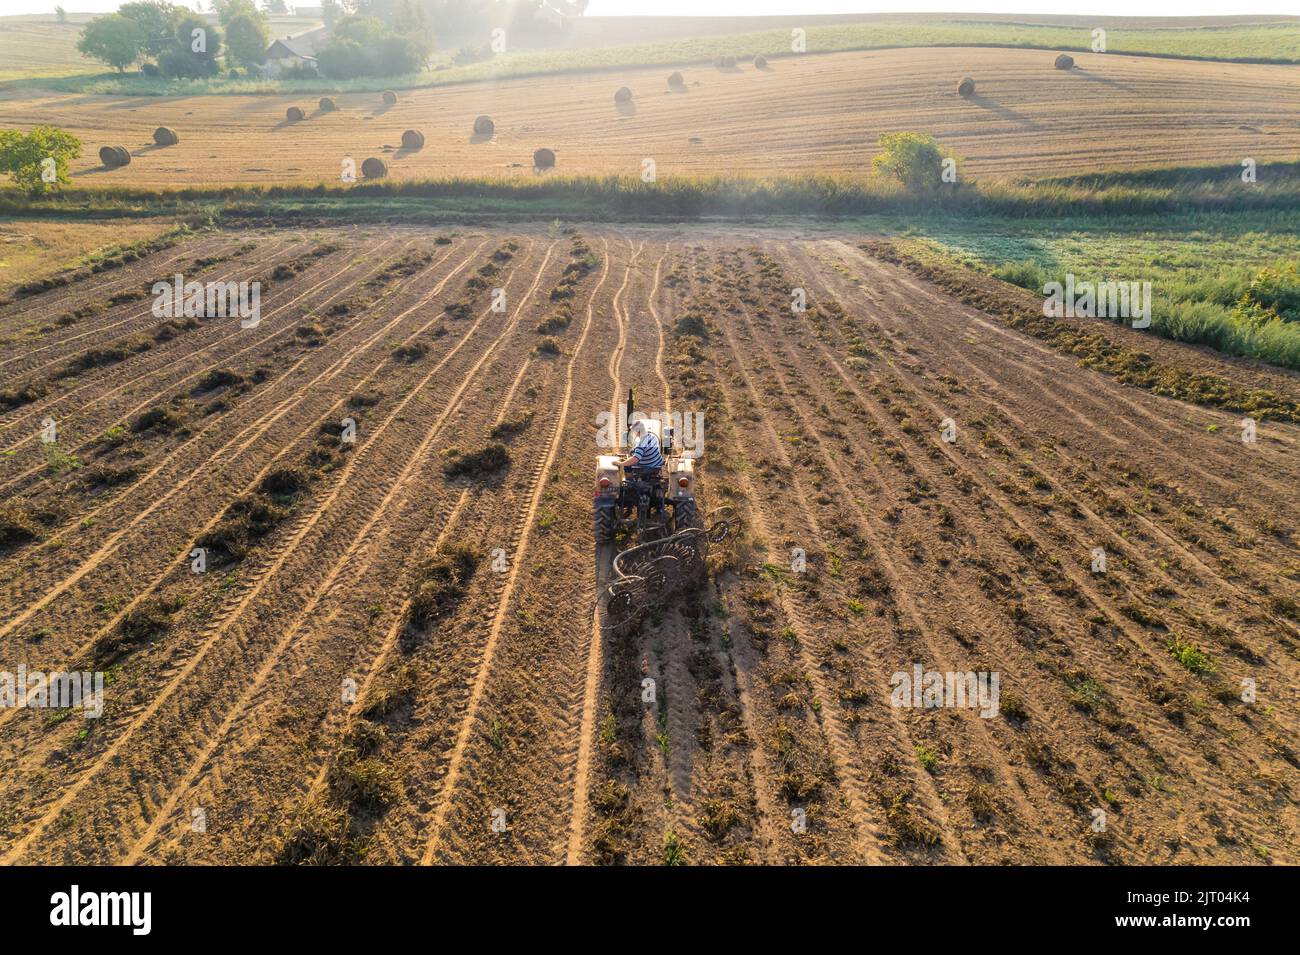 Il trattore attraversa piantagioni di fagioli con campi agricoli e vegetazione sullo sfondo. Paesaggio agricolo. Industria alimentare. Shot orizzontale. Foto di alta qualità Foto Stock